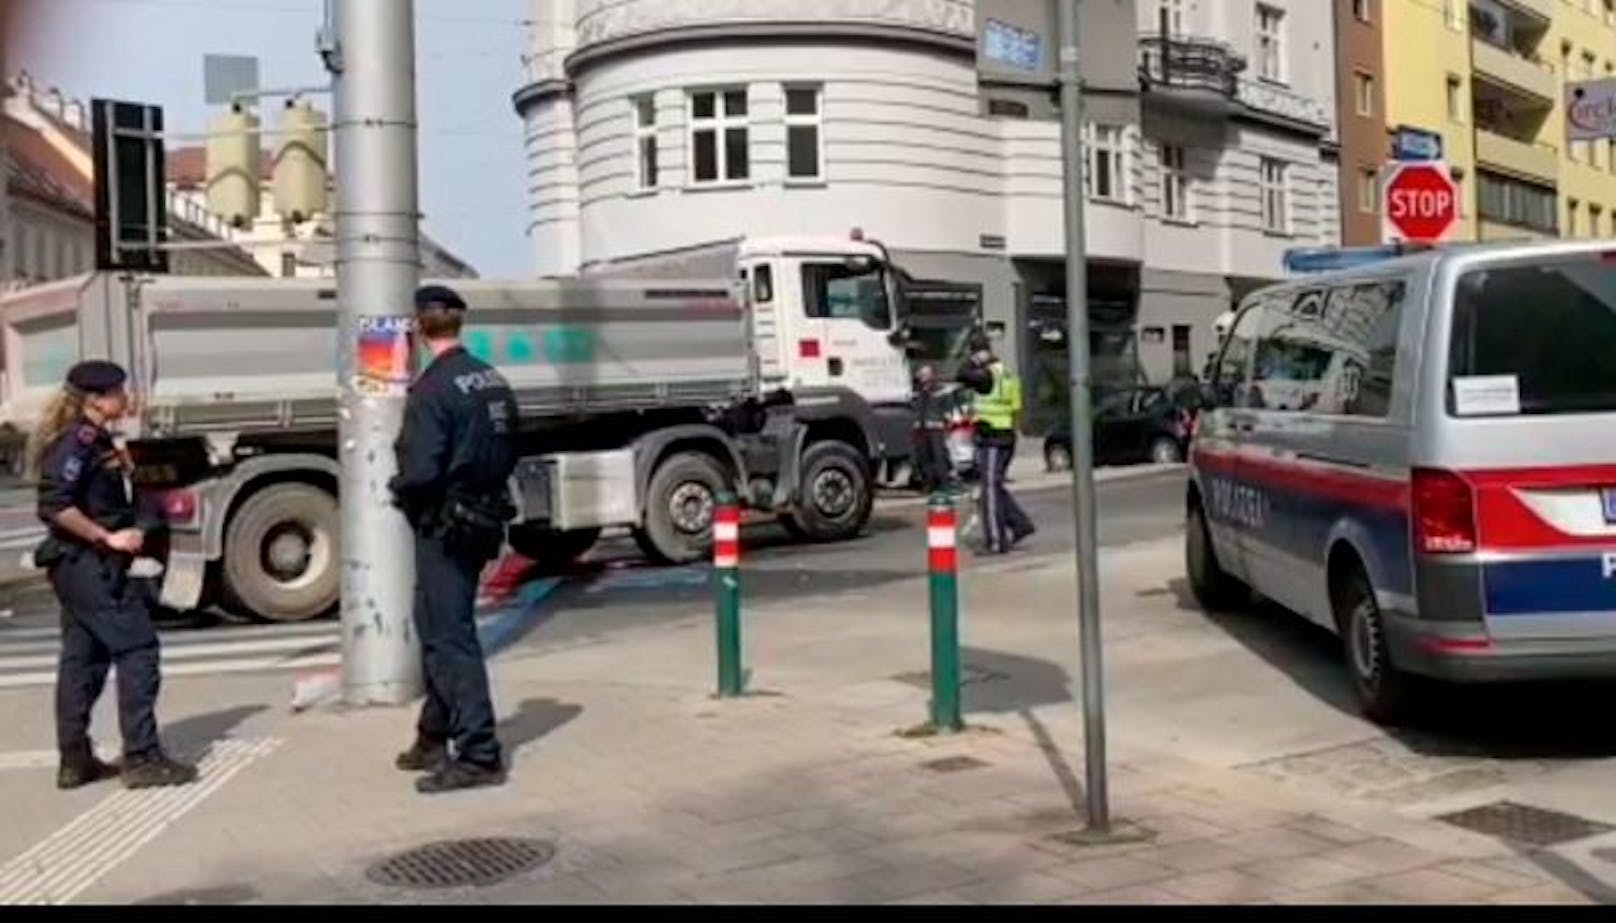 An der Kreuzung Landstraße Hauptstraße Ecke Apostelgasse in Wien wurde die Frau von dem Lastwagen erfasst.